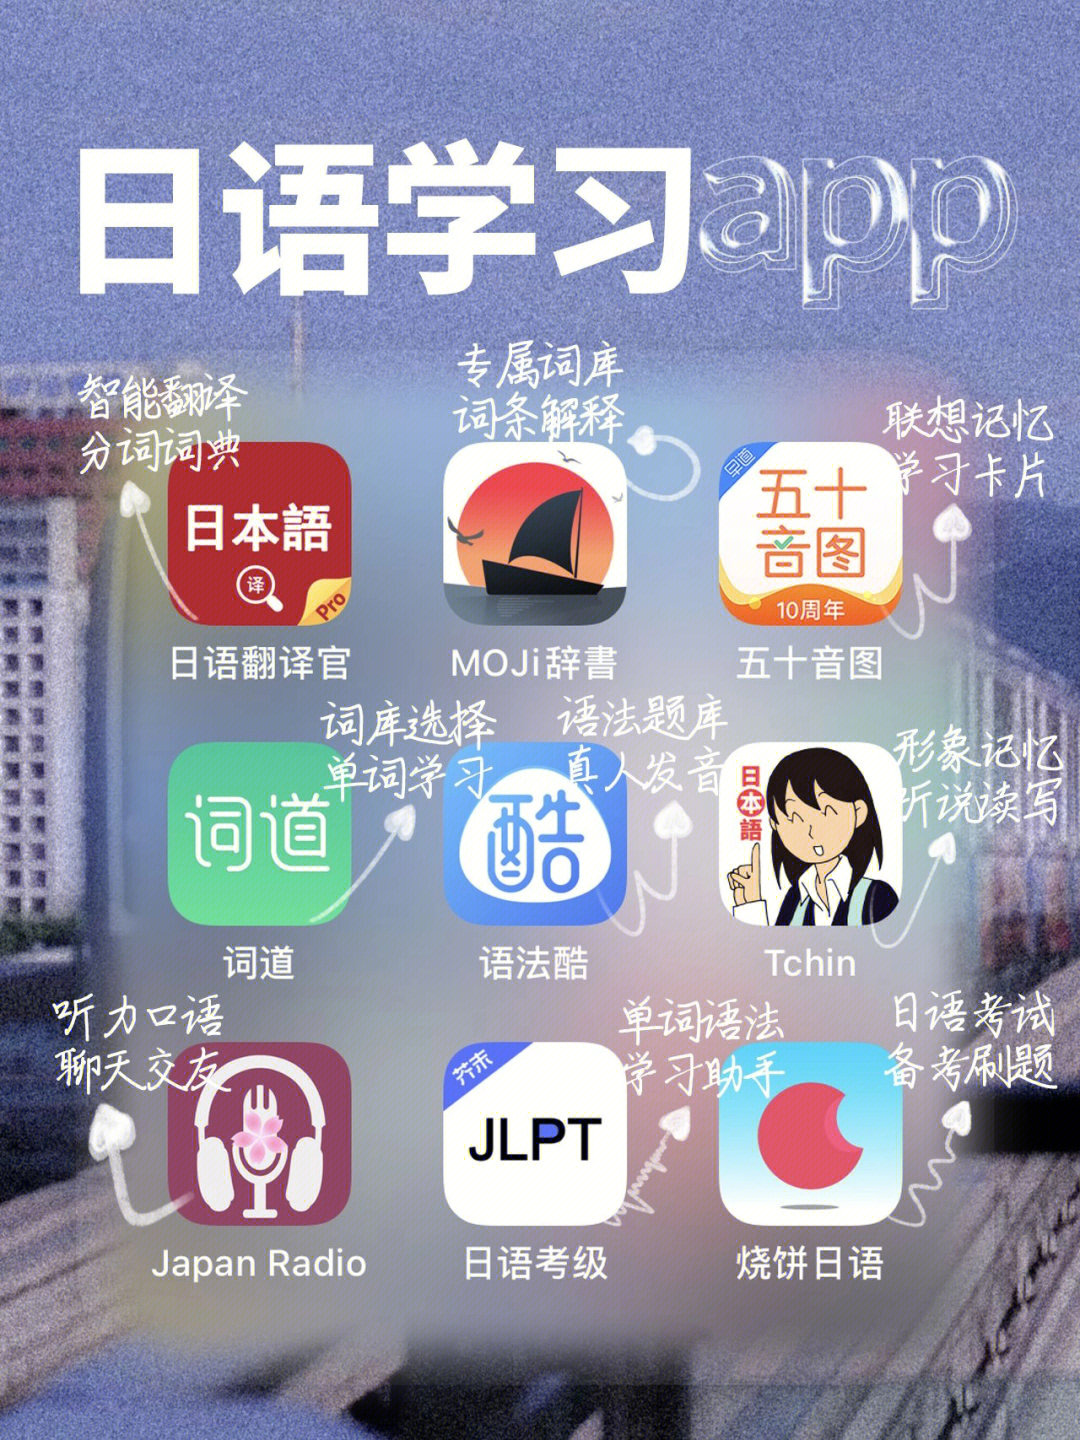 9款自用日语学习app自学高分过n1的秘密